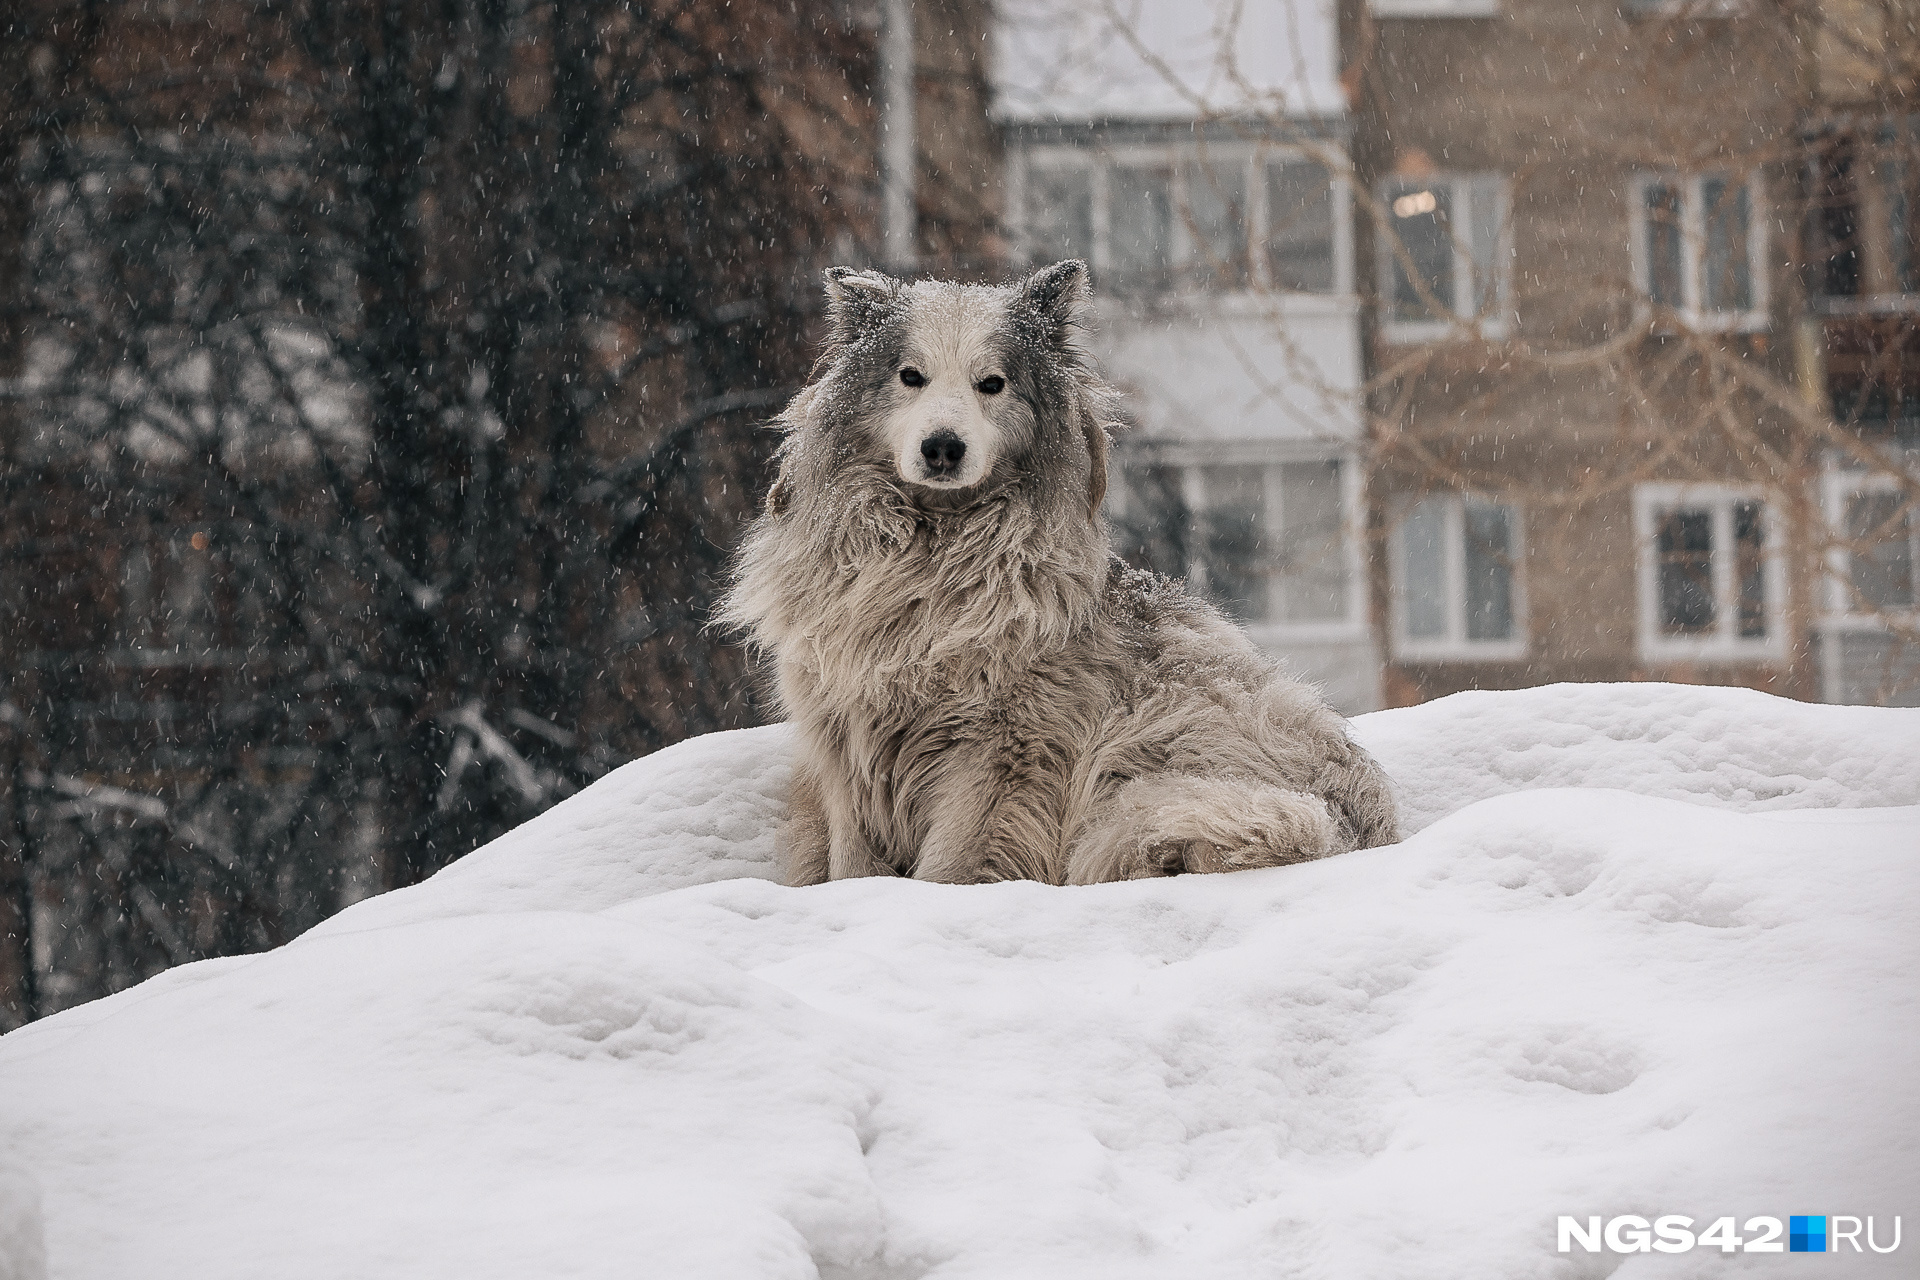 Милый пес стал городской легендой. Мы <a href="https://ngs42.ru/text/animals/2022/12/10/71886260/" class="_" target="_blank">рассказывали</a> его историю